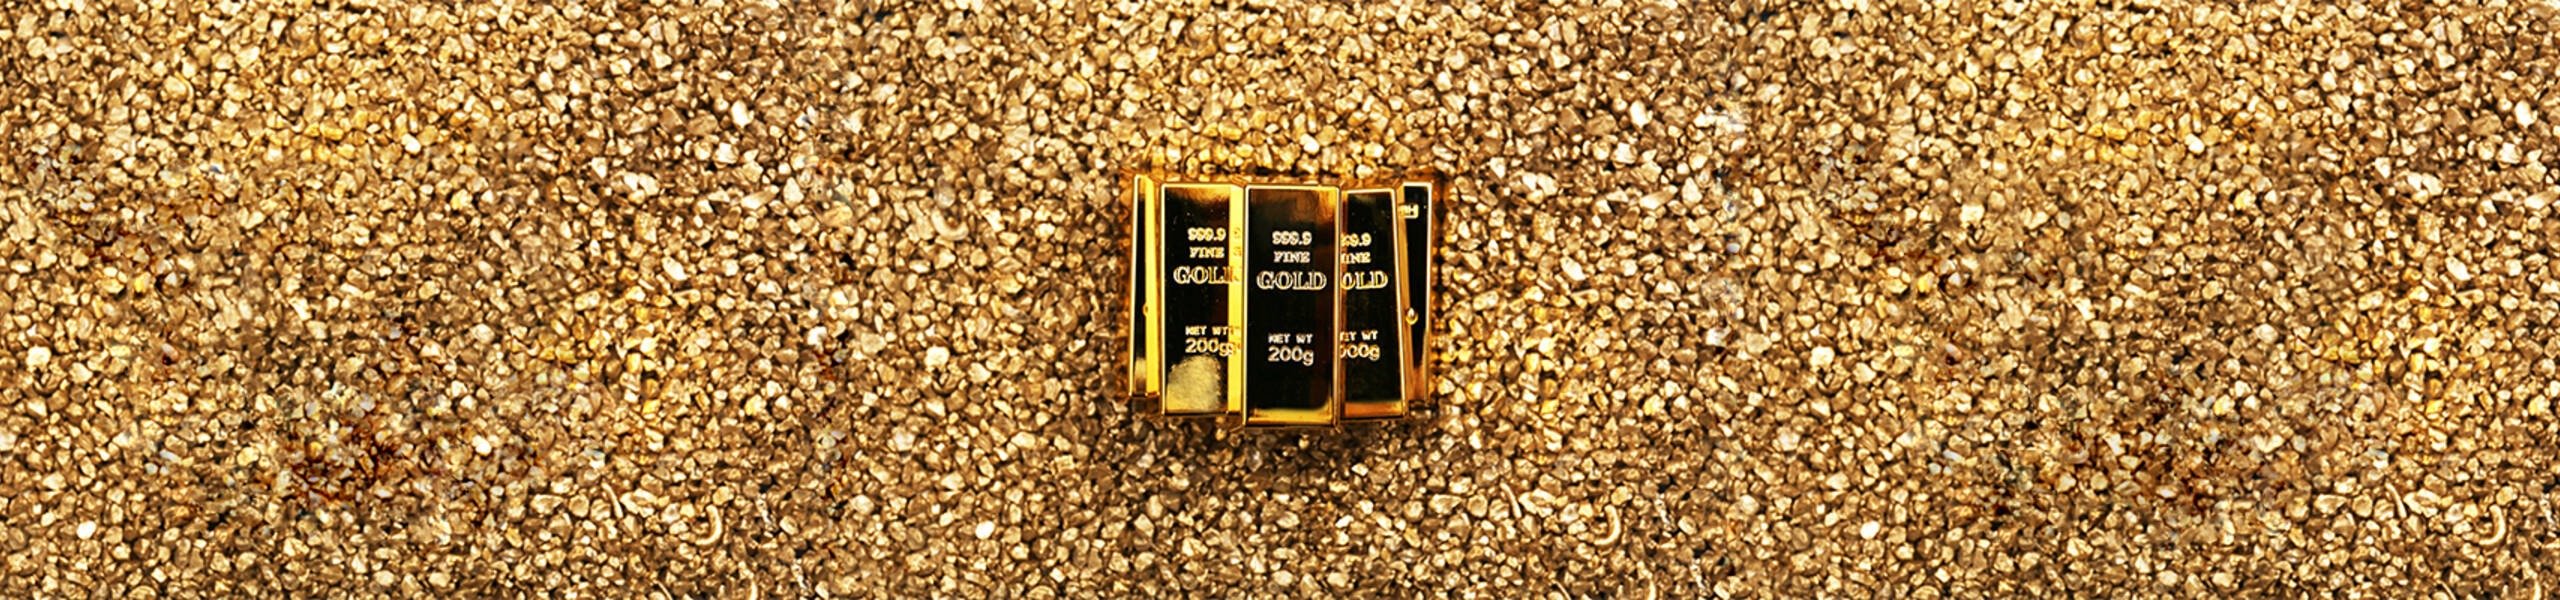 El Oro con leves ganancias a pesar de la debilidad del dólar